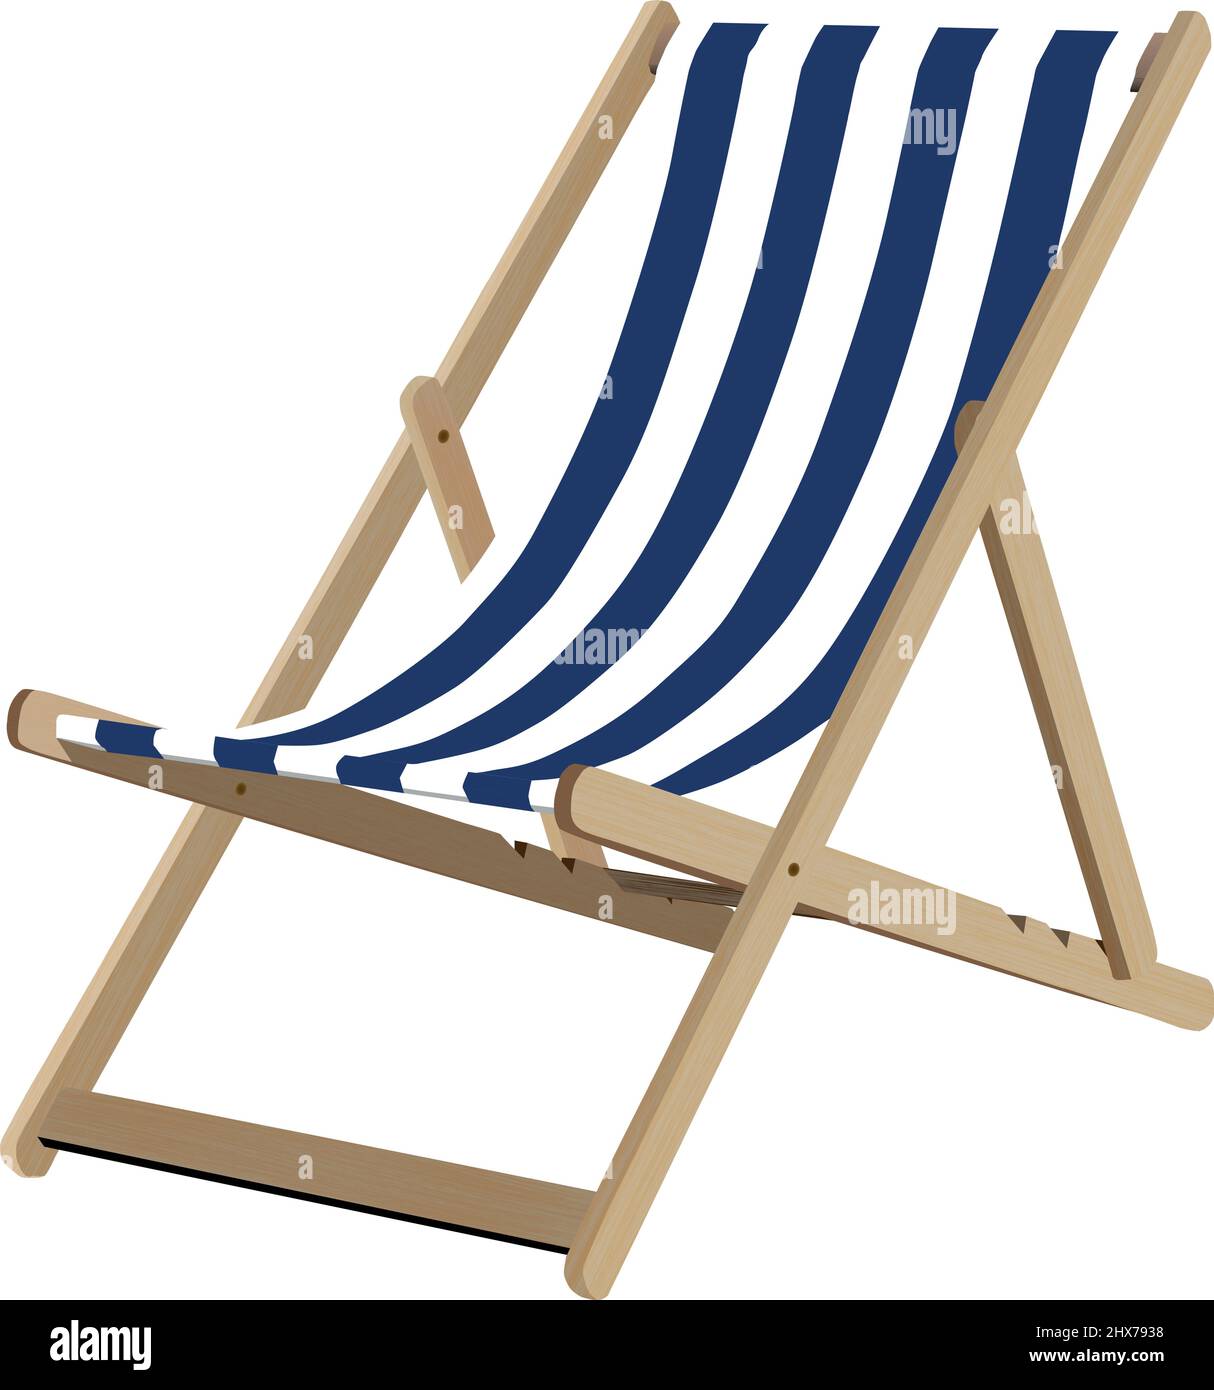 Chaise de terrasse en toile à rayures bleues et blanches Illustration de Vecteur